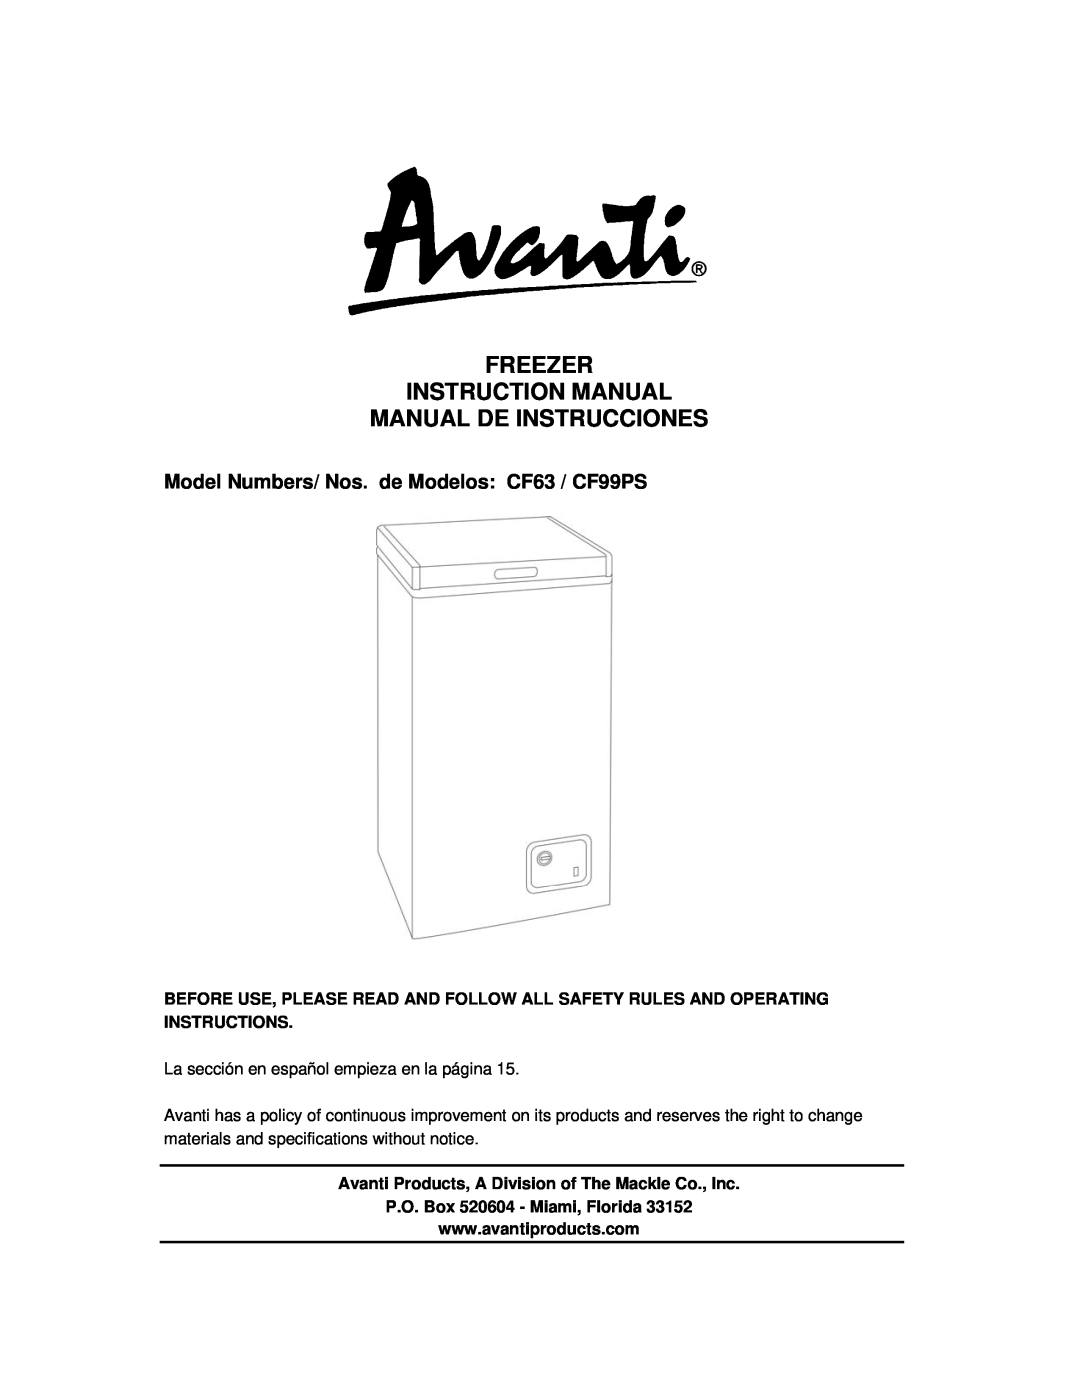 Avanti instruction manual Manual De Instrucciones, Model Numbers/ Nos. de Modelos CF63 / CF99PS 